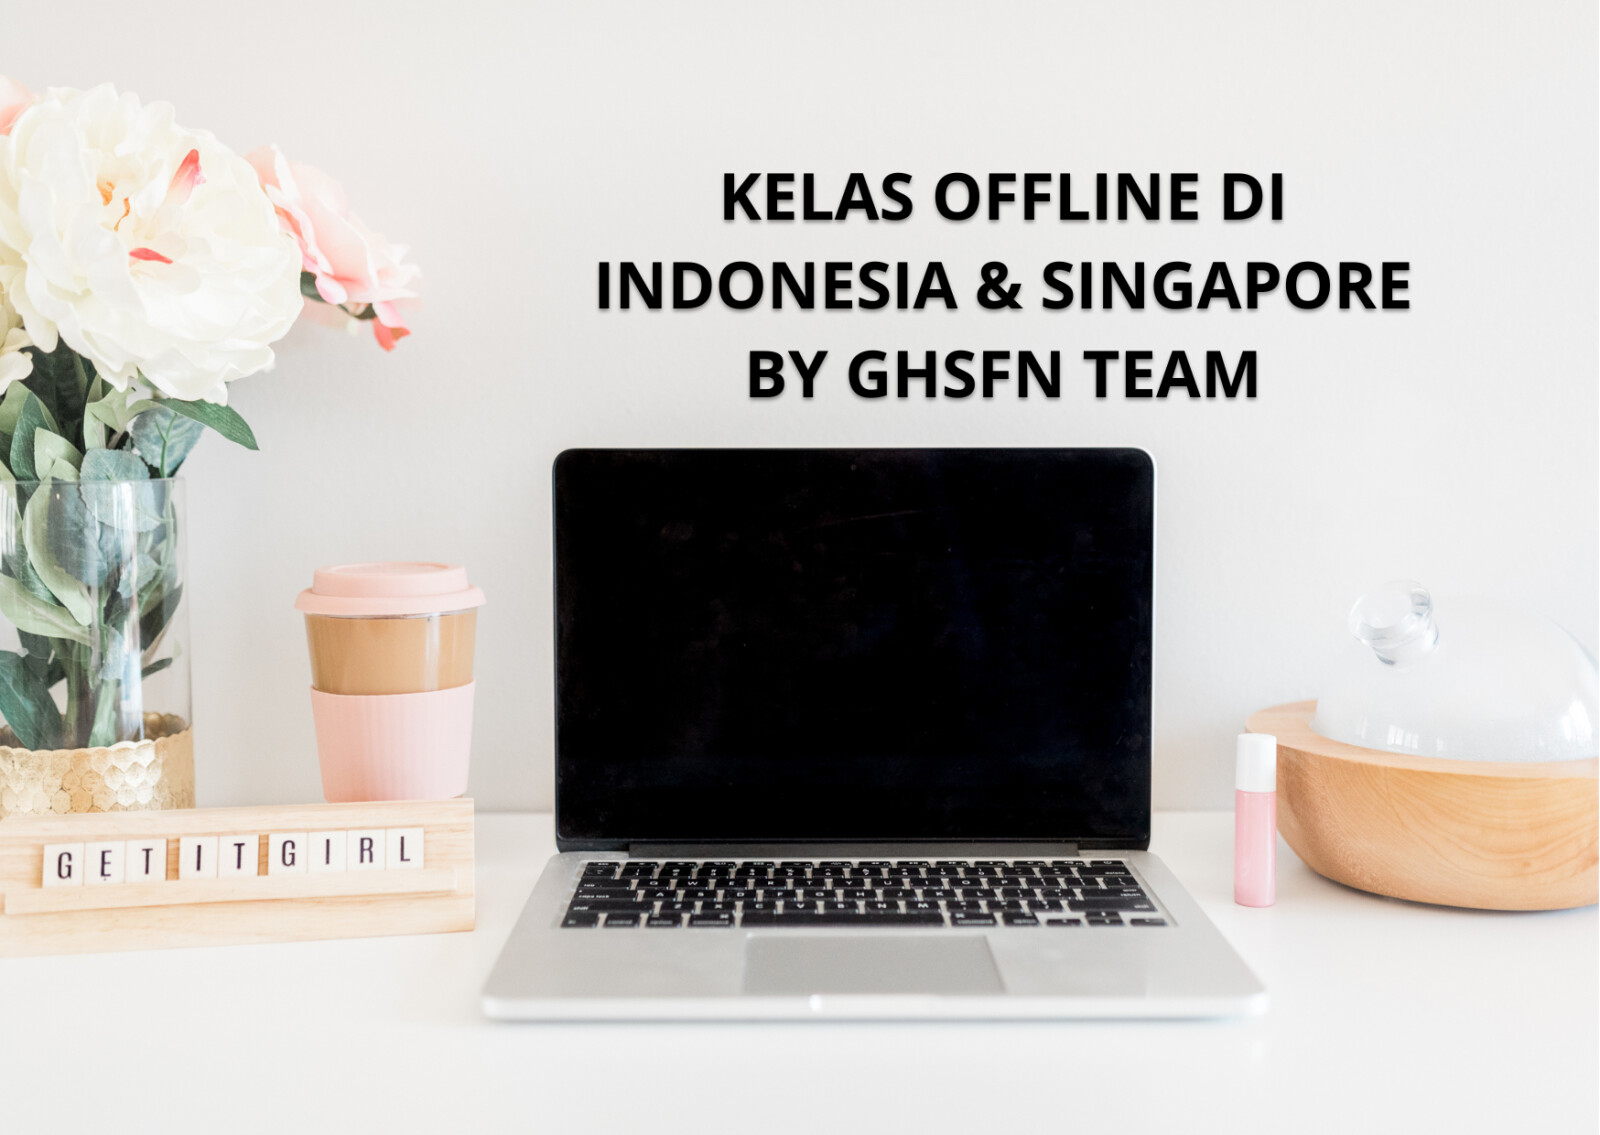 KELAS OFFLINE DI INDONESIA & SINGAPORE BY GHSFN TEAM